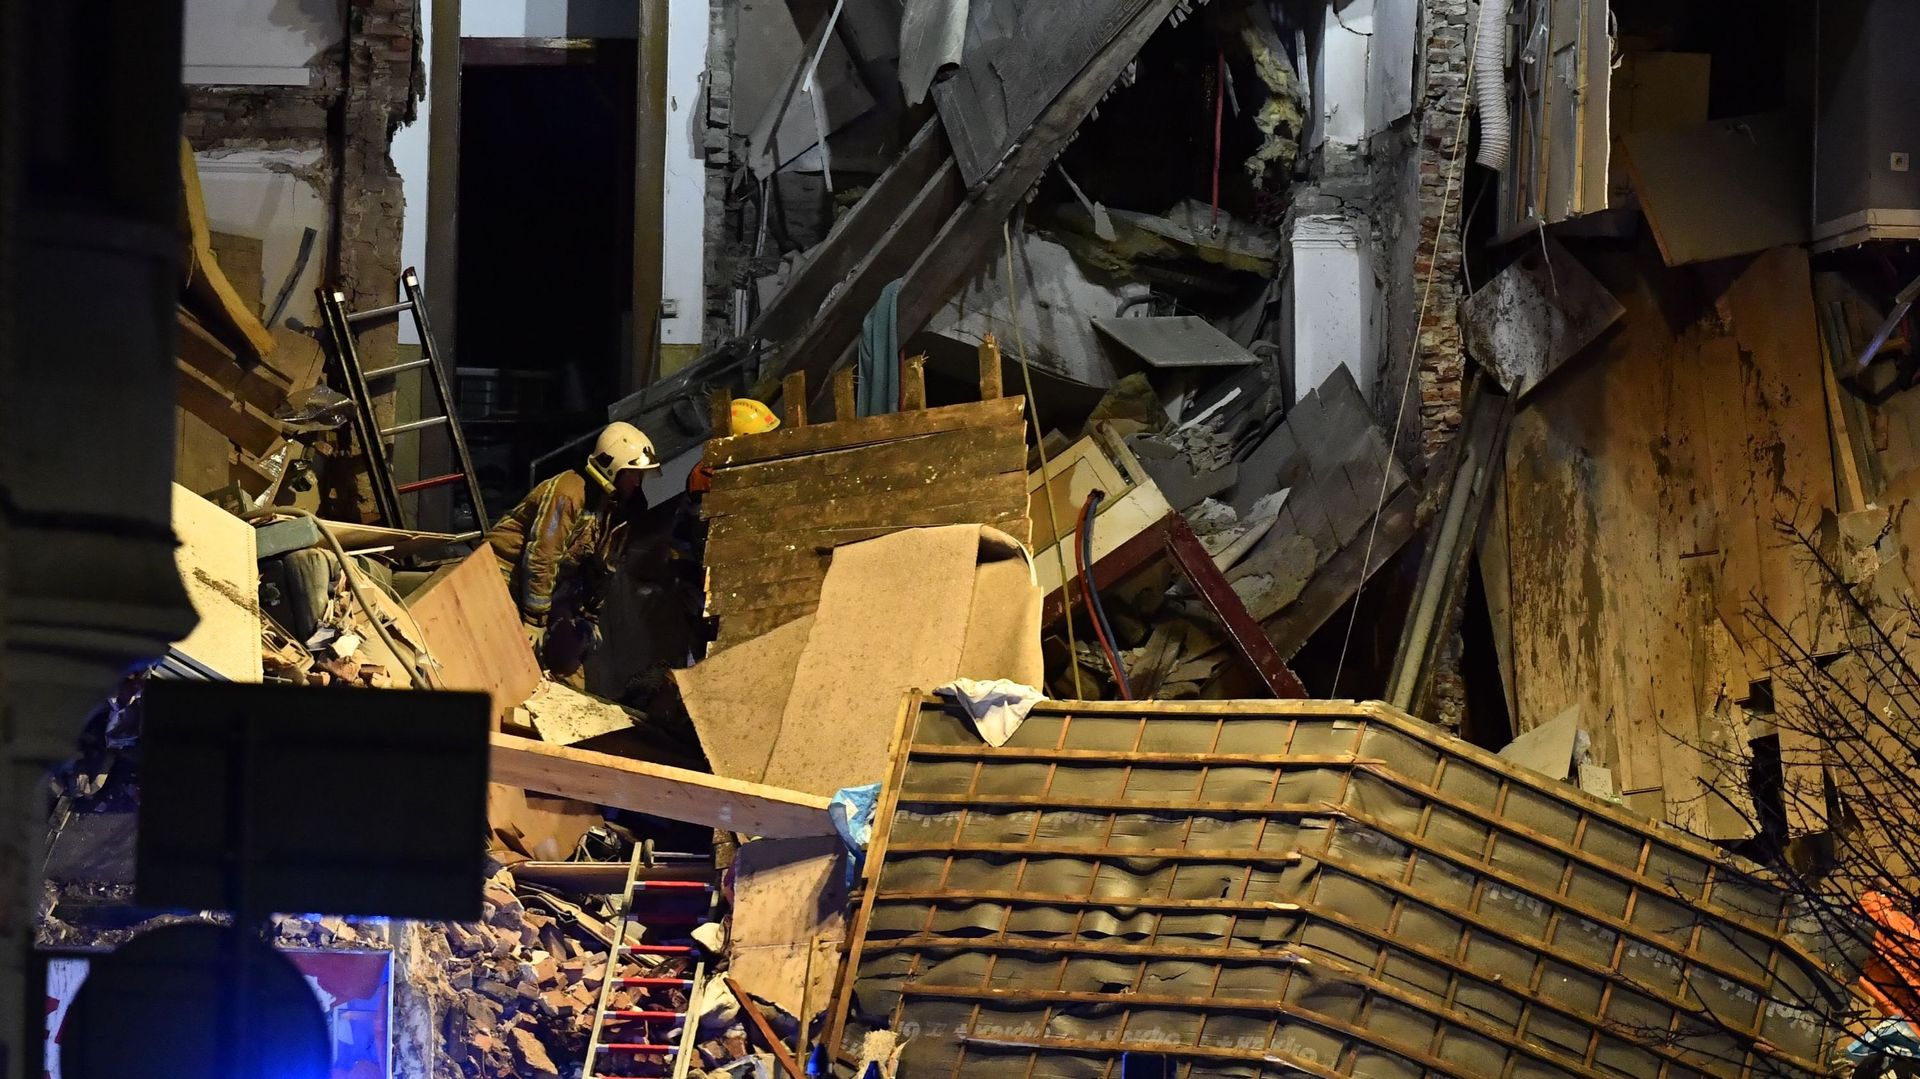 Un immeuble s'effondre après une explosion à Anvers: 7 personnes tirées vivantes des décombres, recherches en cours